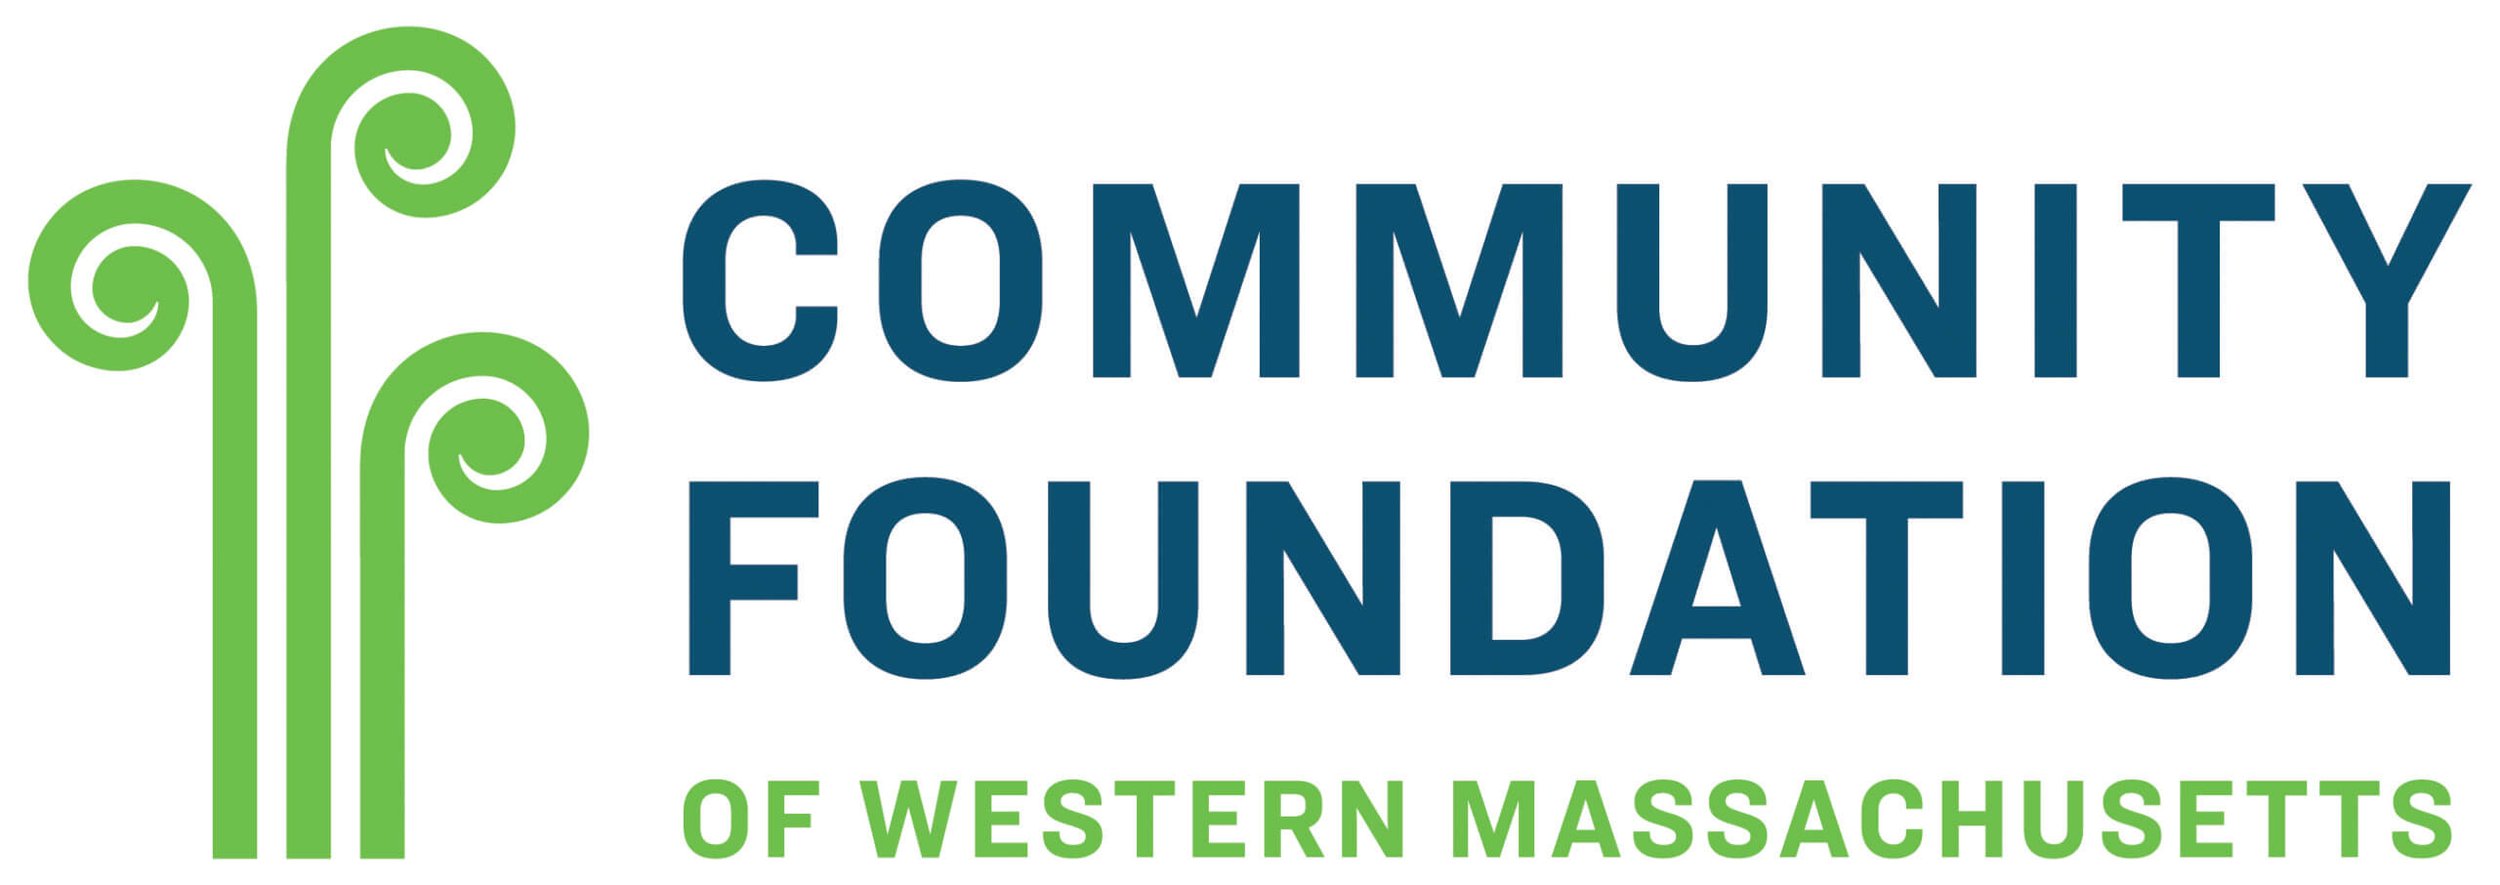 community foundation of western ma.jpg